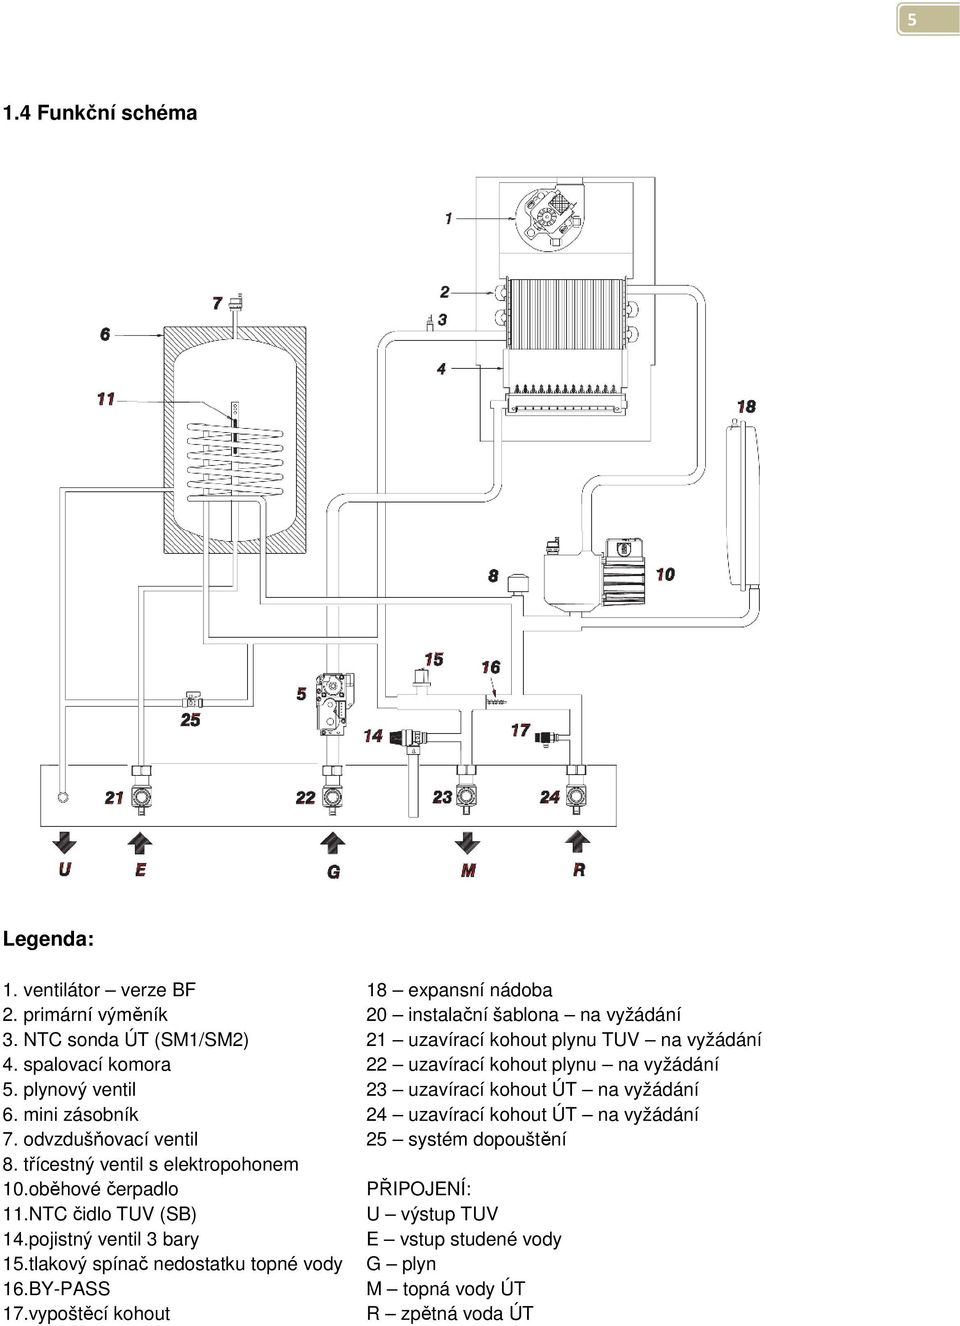 plynový ventil 23 uzavírací kohout ÚT na vyžádání 6. mini zásobník 24 uzavírací kohout ÚT na vyžádání 7. odvzdušňovací ventil 25 systém dopouštění 8.